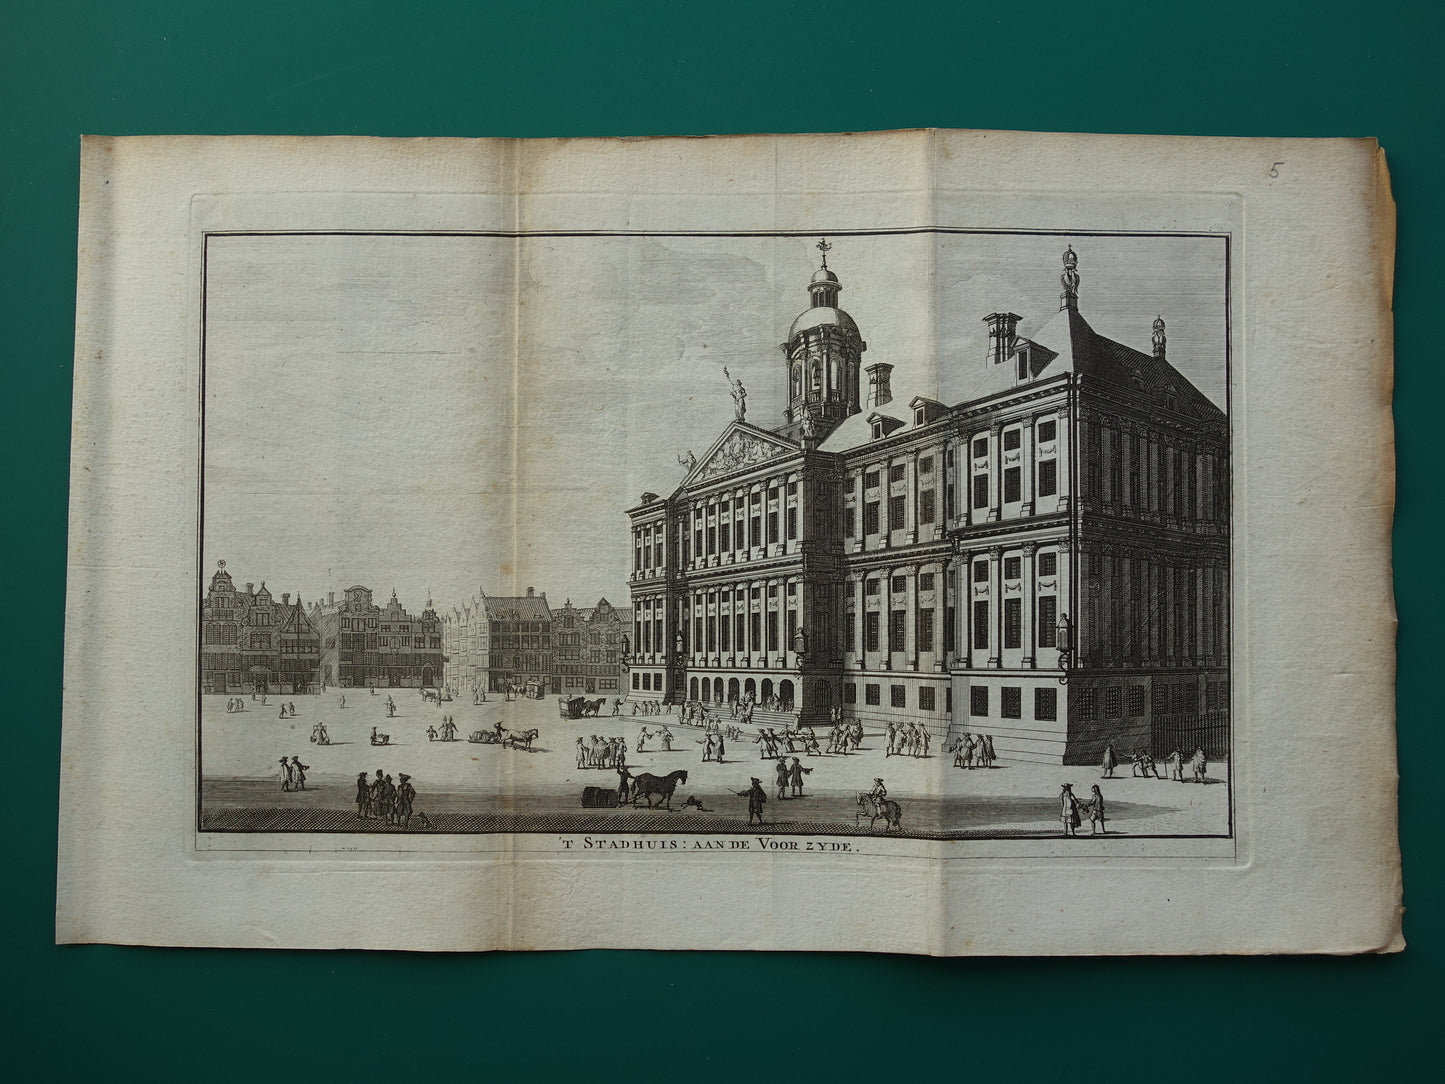 't Stadhuis aan de voor zyde wagenaar amsterdam octavo editie 1770